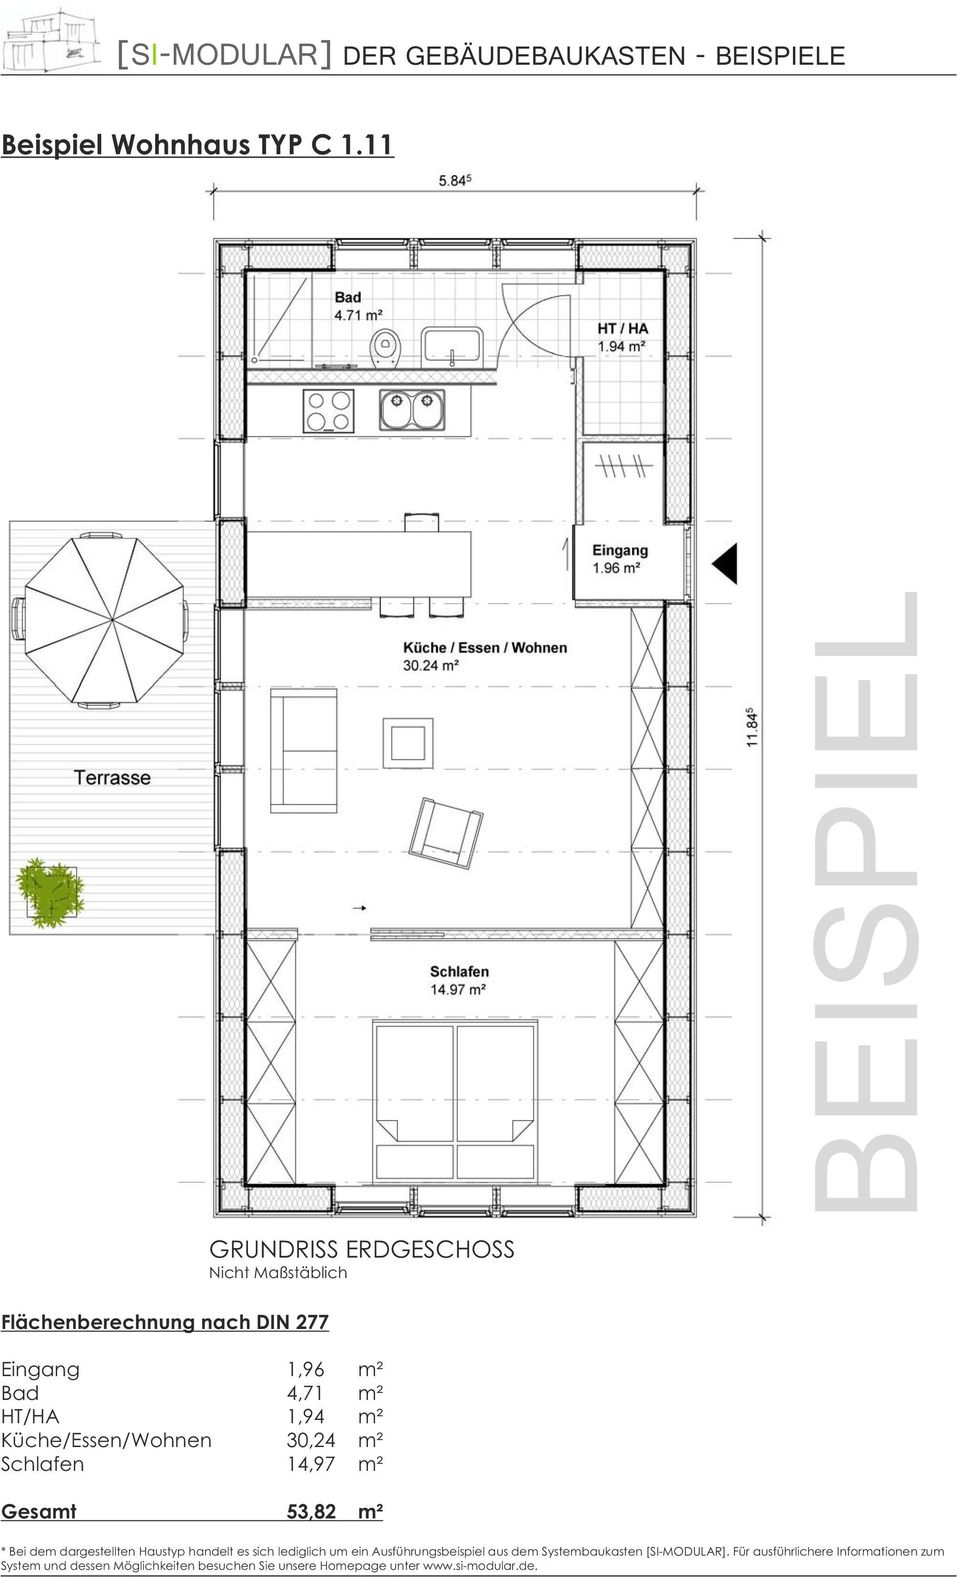 HT/HA 1,94 m² Küche/Essen/Wohnen 30,24 m² Schlafen 14,97 m² Gesamt 53,82 m² * Bei dem dargestellten Haustyp